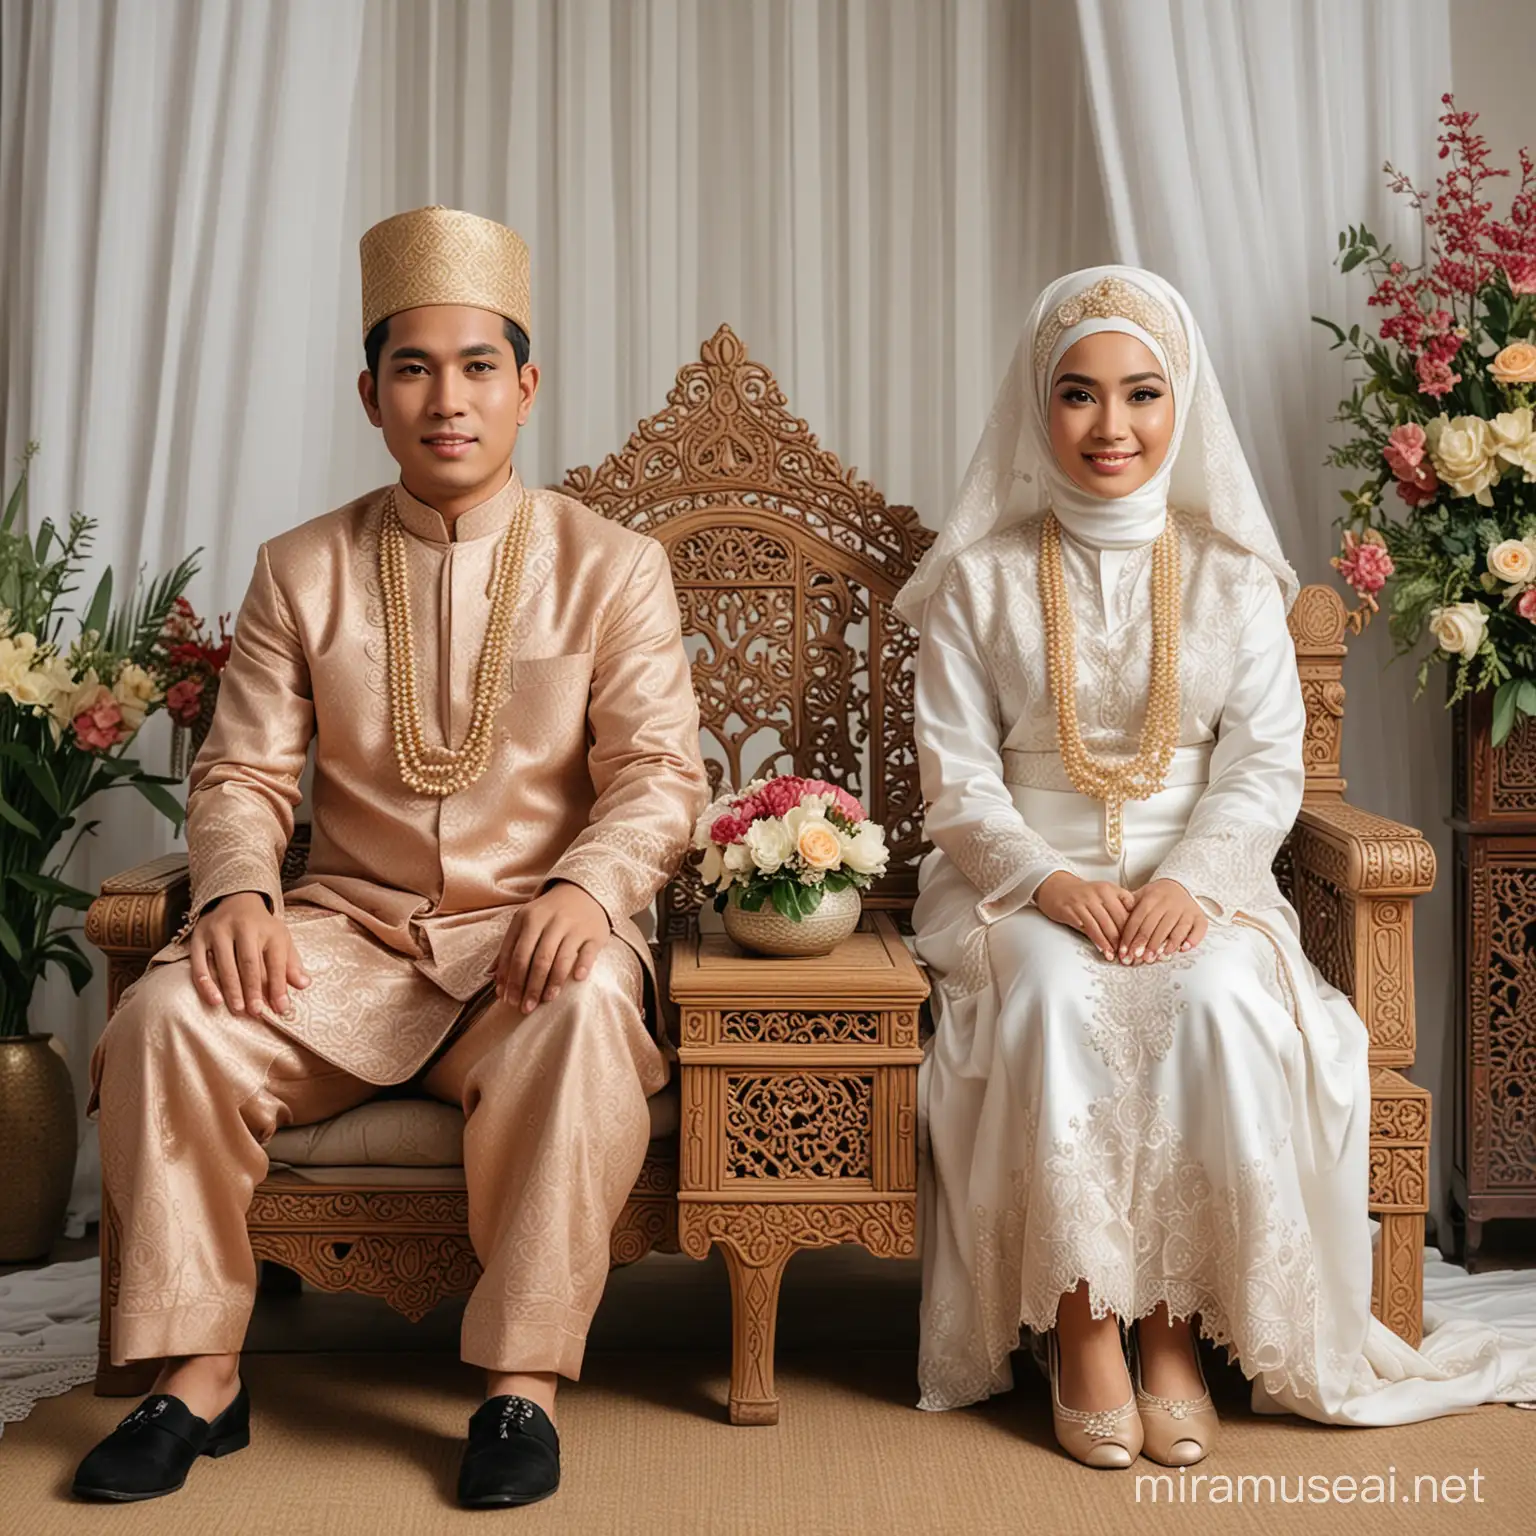 Foto wedding  pengantin laki laki dan perempuan memakai hijab,memakai busana pengantin adat Jawa indonesia sedikit gemuk,memakai sepatu,duduk di kursi pelaminan,foto asli nyata,tanpa ekspresi